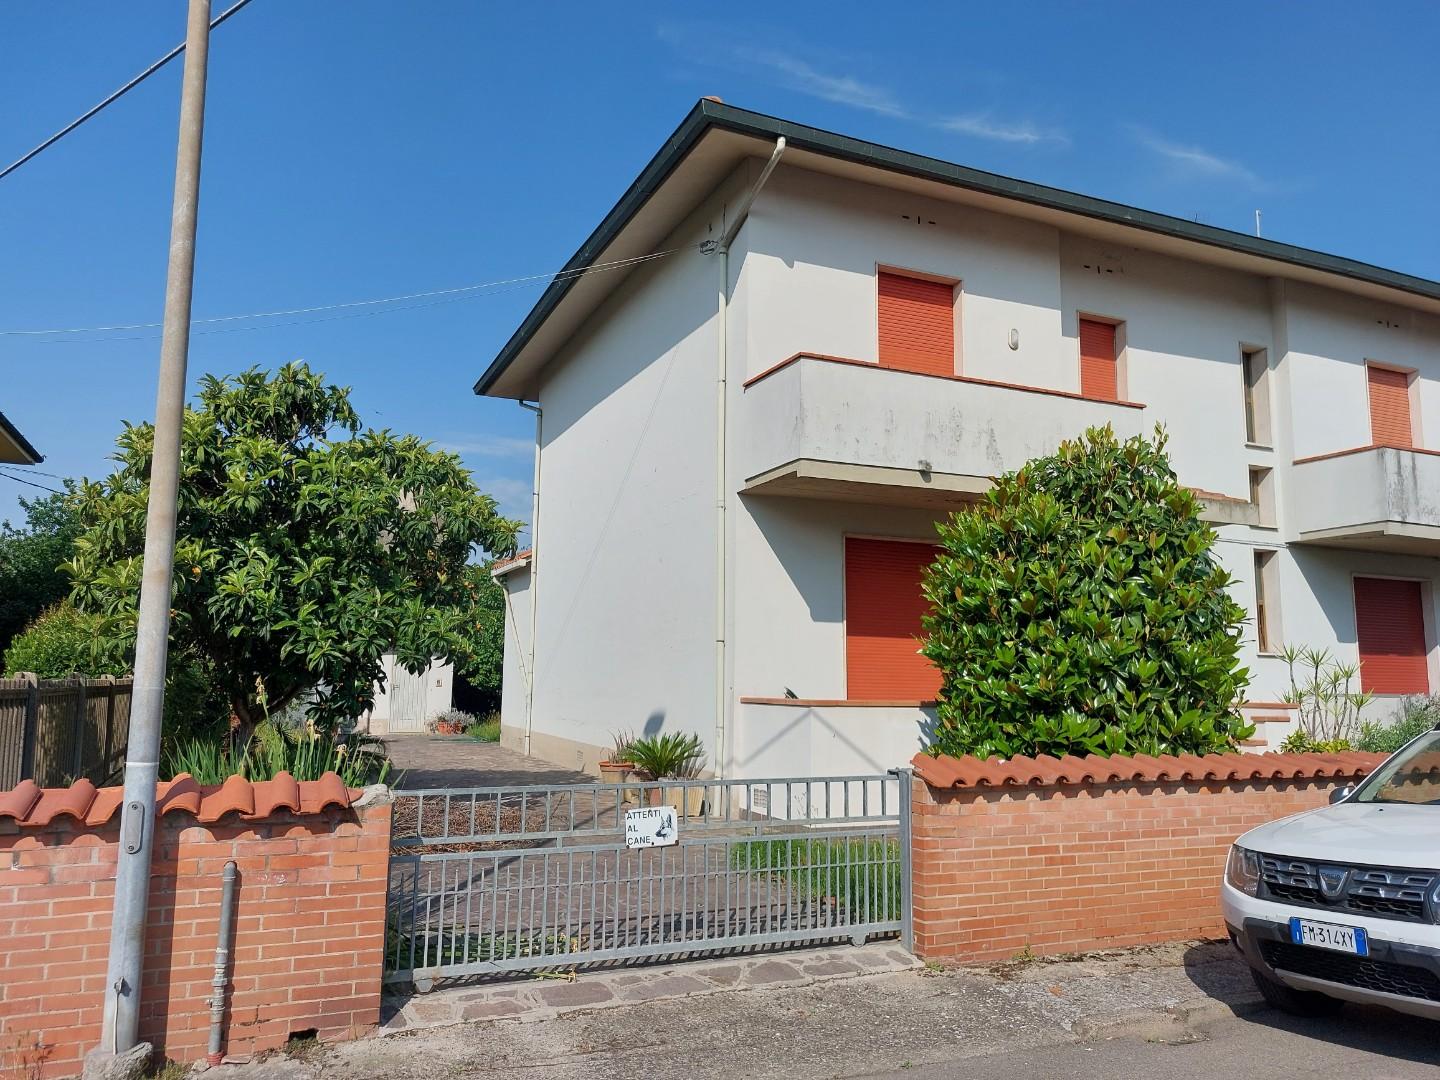 Villa Bifamiliare in vendita a Santa Croce sull'Arno, 6 locali, prezzo € 250.000 | PortaleAgenzieImmobiliari.it